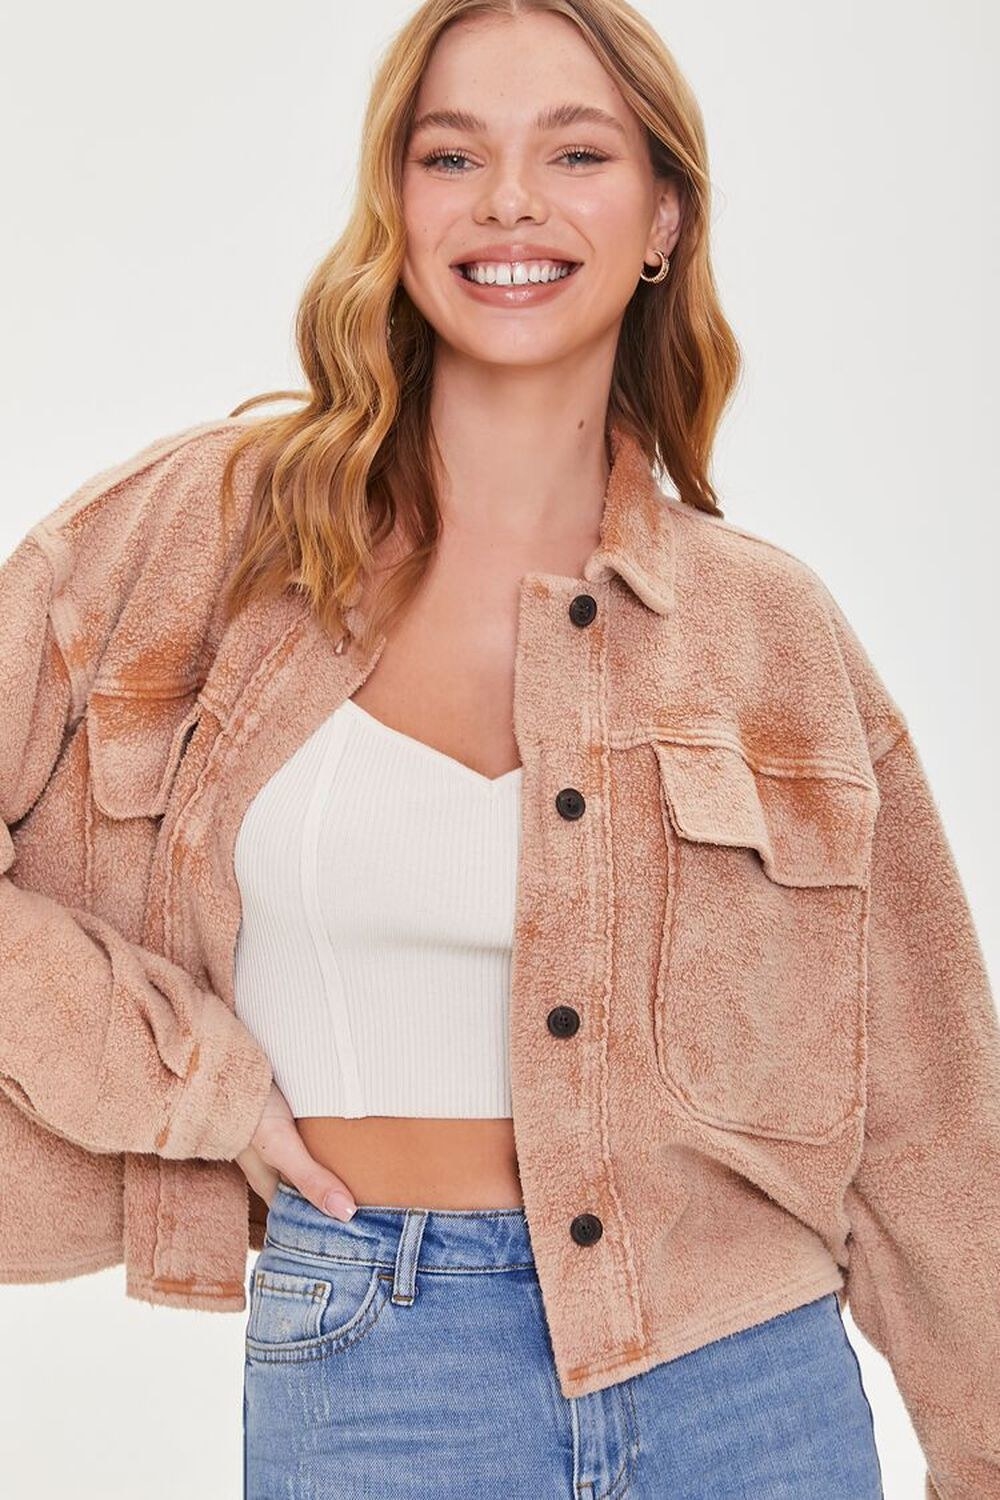 Model wearing the fleece jacket in light brown